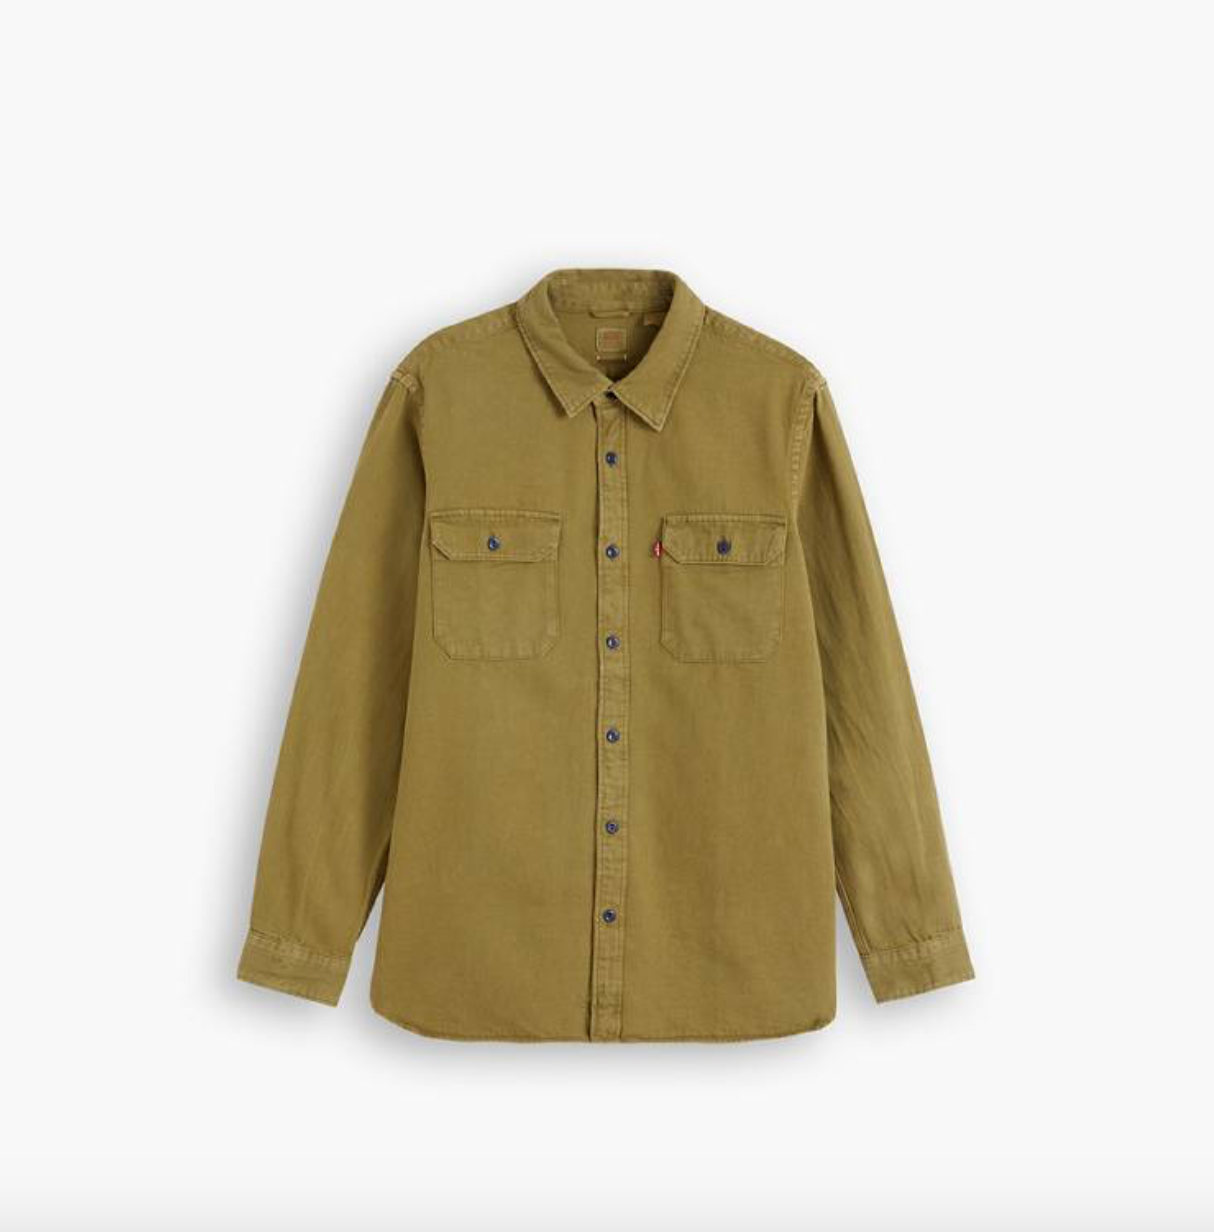 Jackson Worker Shirt - Green Garment Dyed Hemp